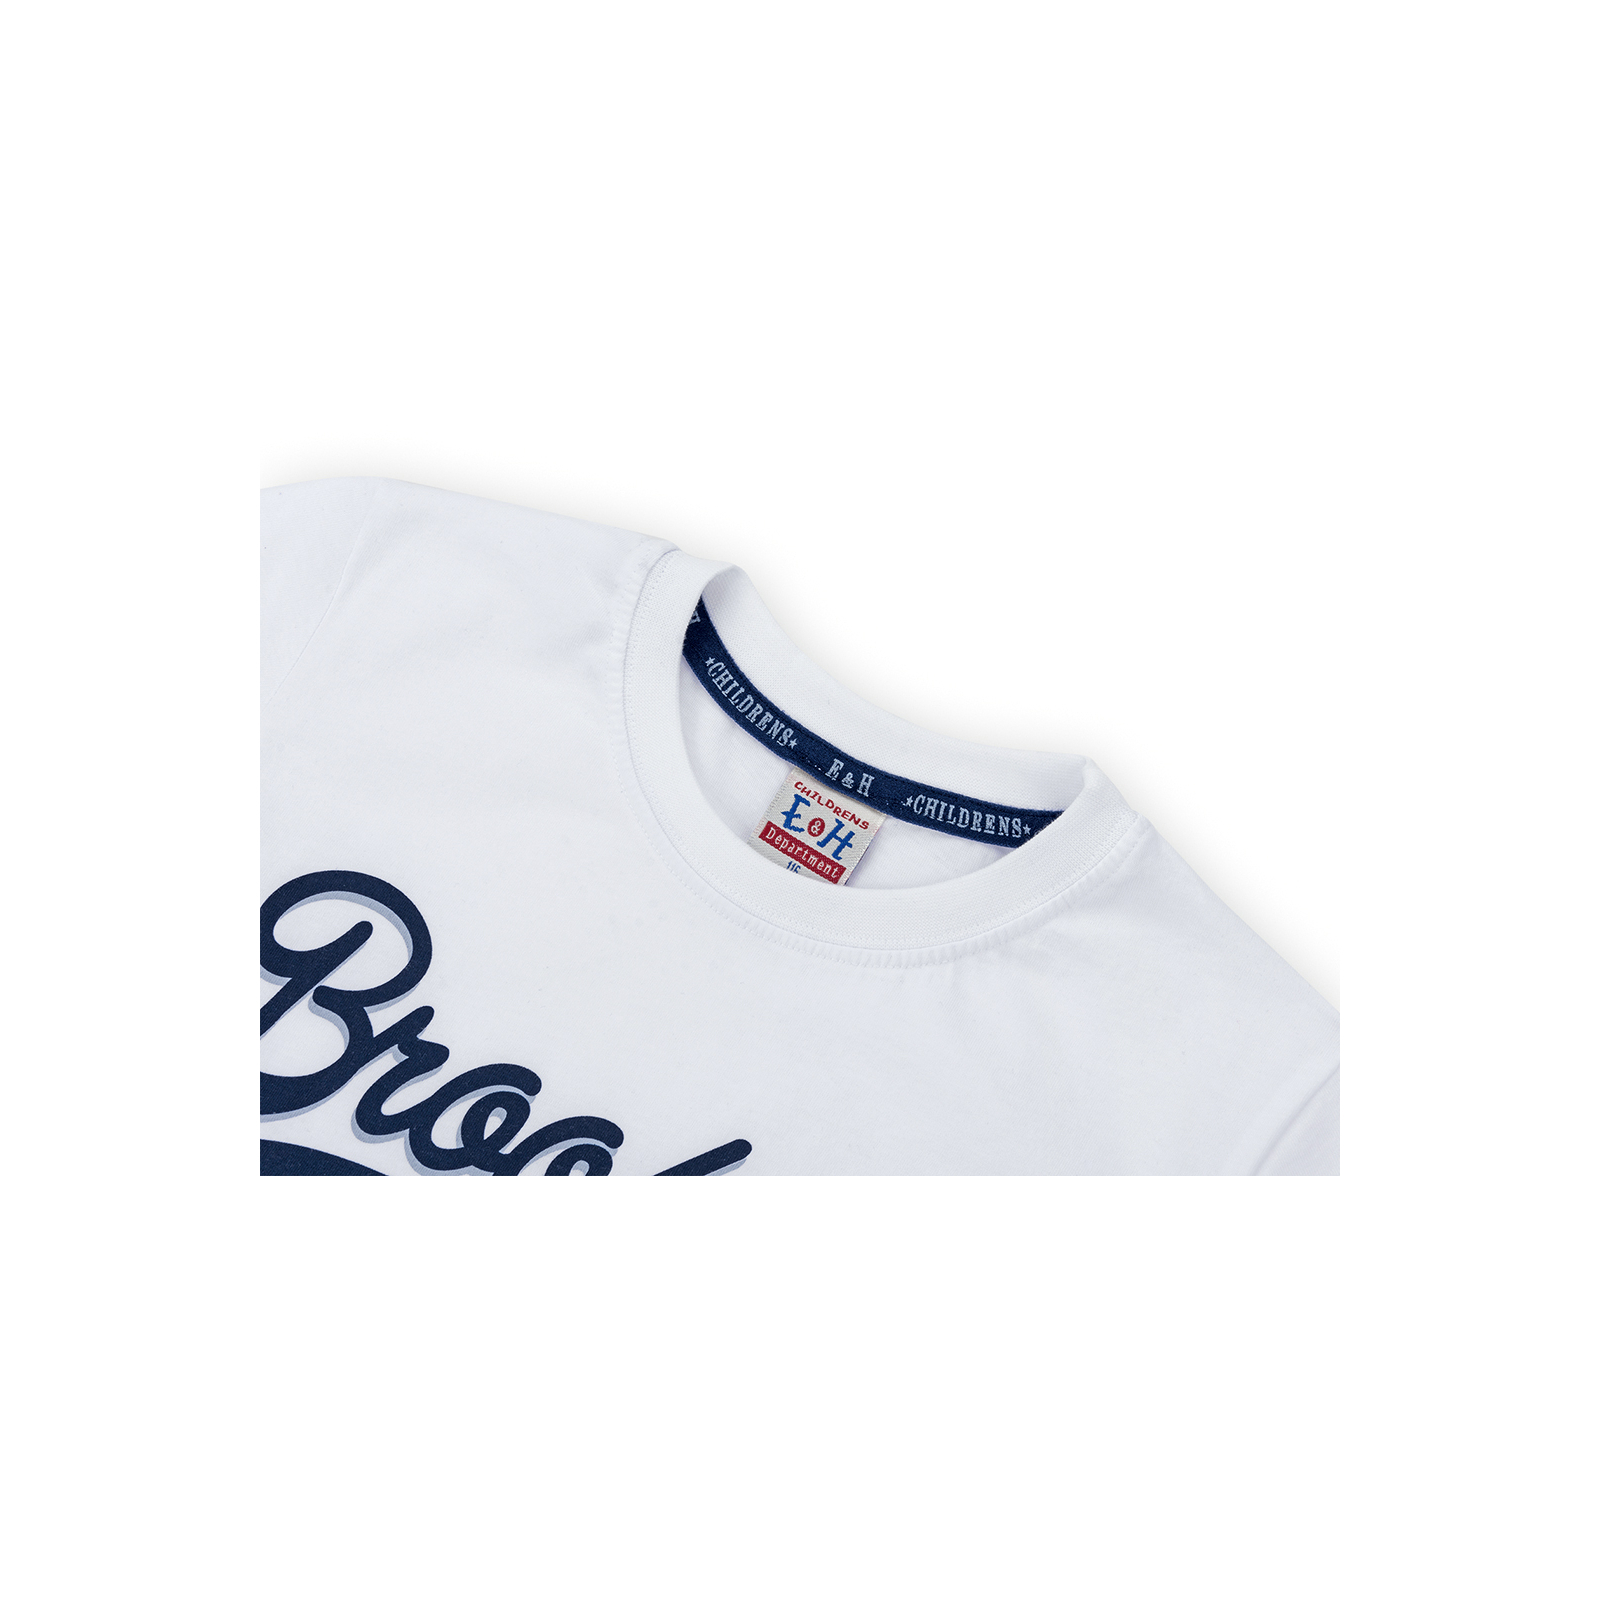 Набор детской одежды Breeze футболка "Brooklyn ATH" с шортами (8932-128B-white) изображение 4